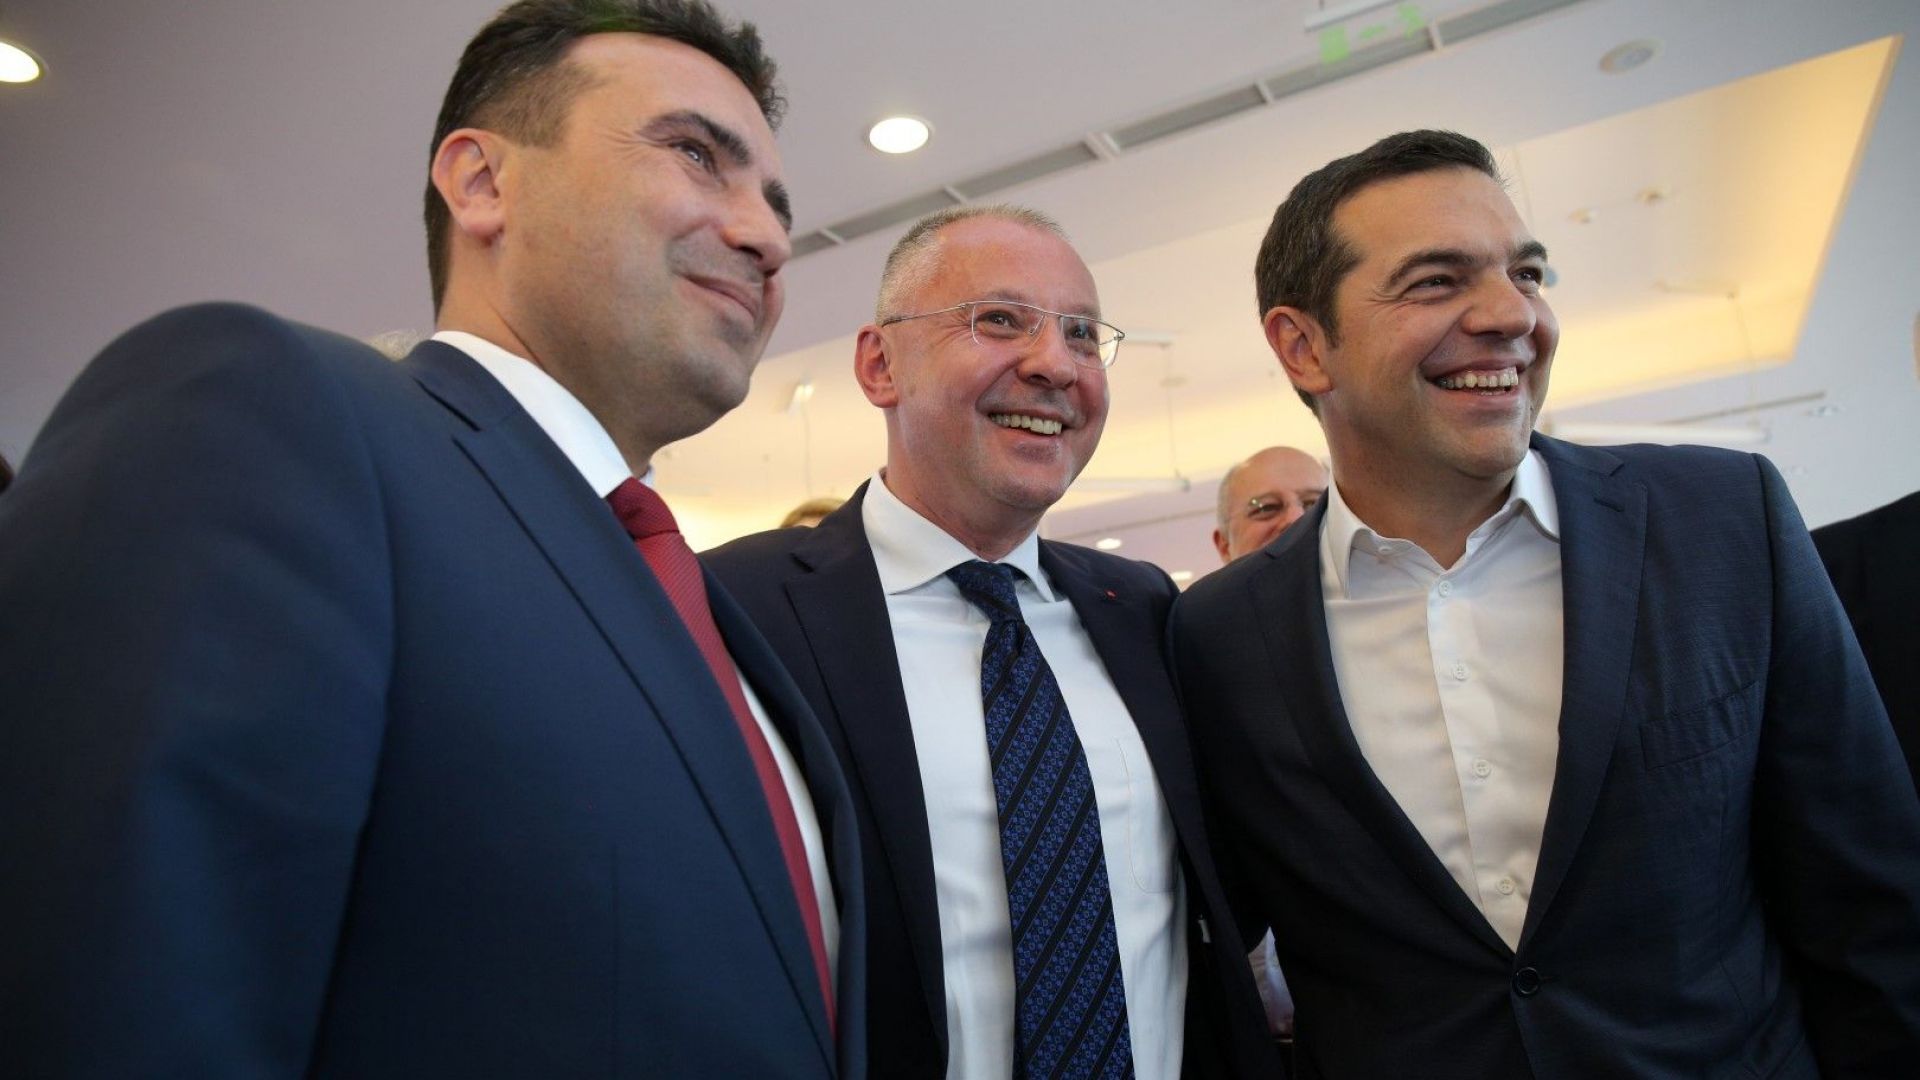 Станишев настоява лидерите в ЕС да решат веднага старта на преговорите със Северна Македония и Албания